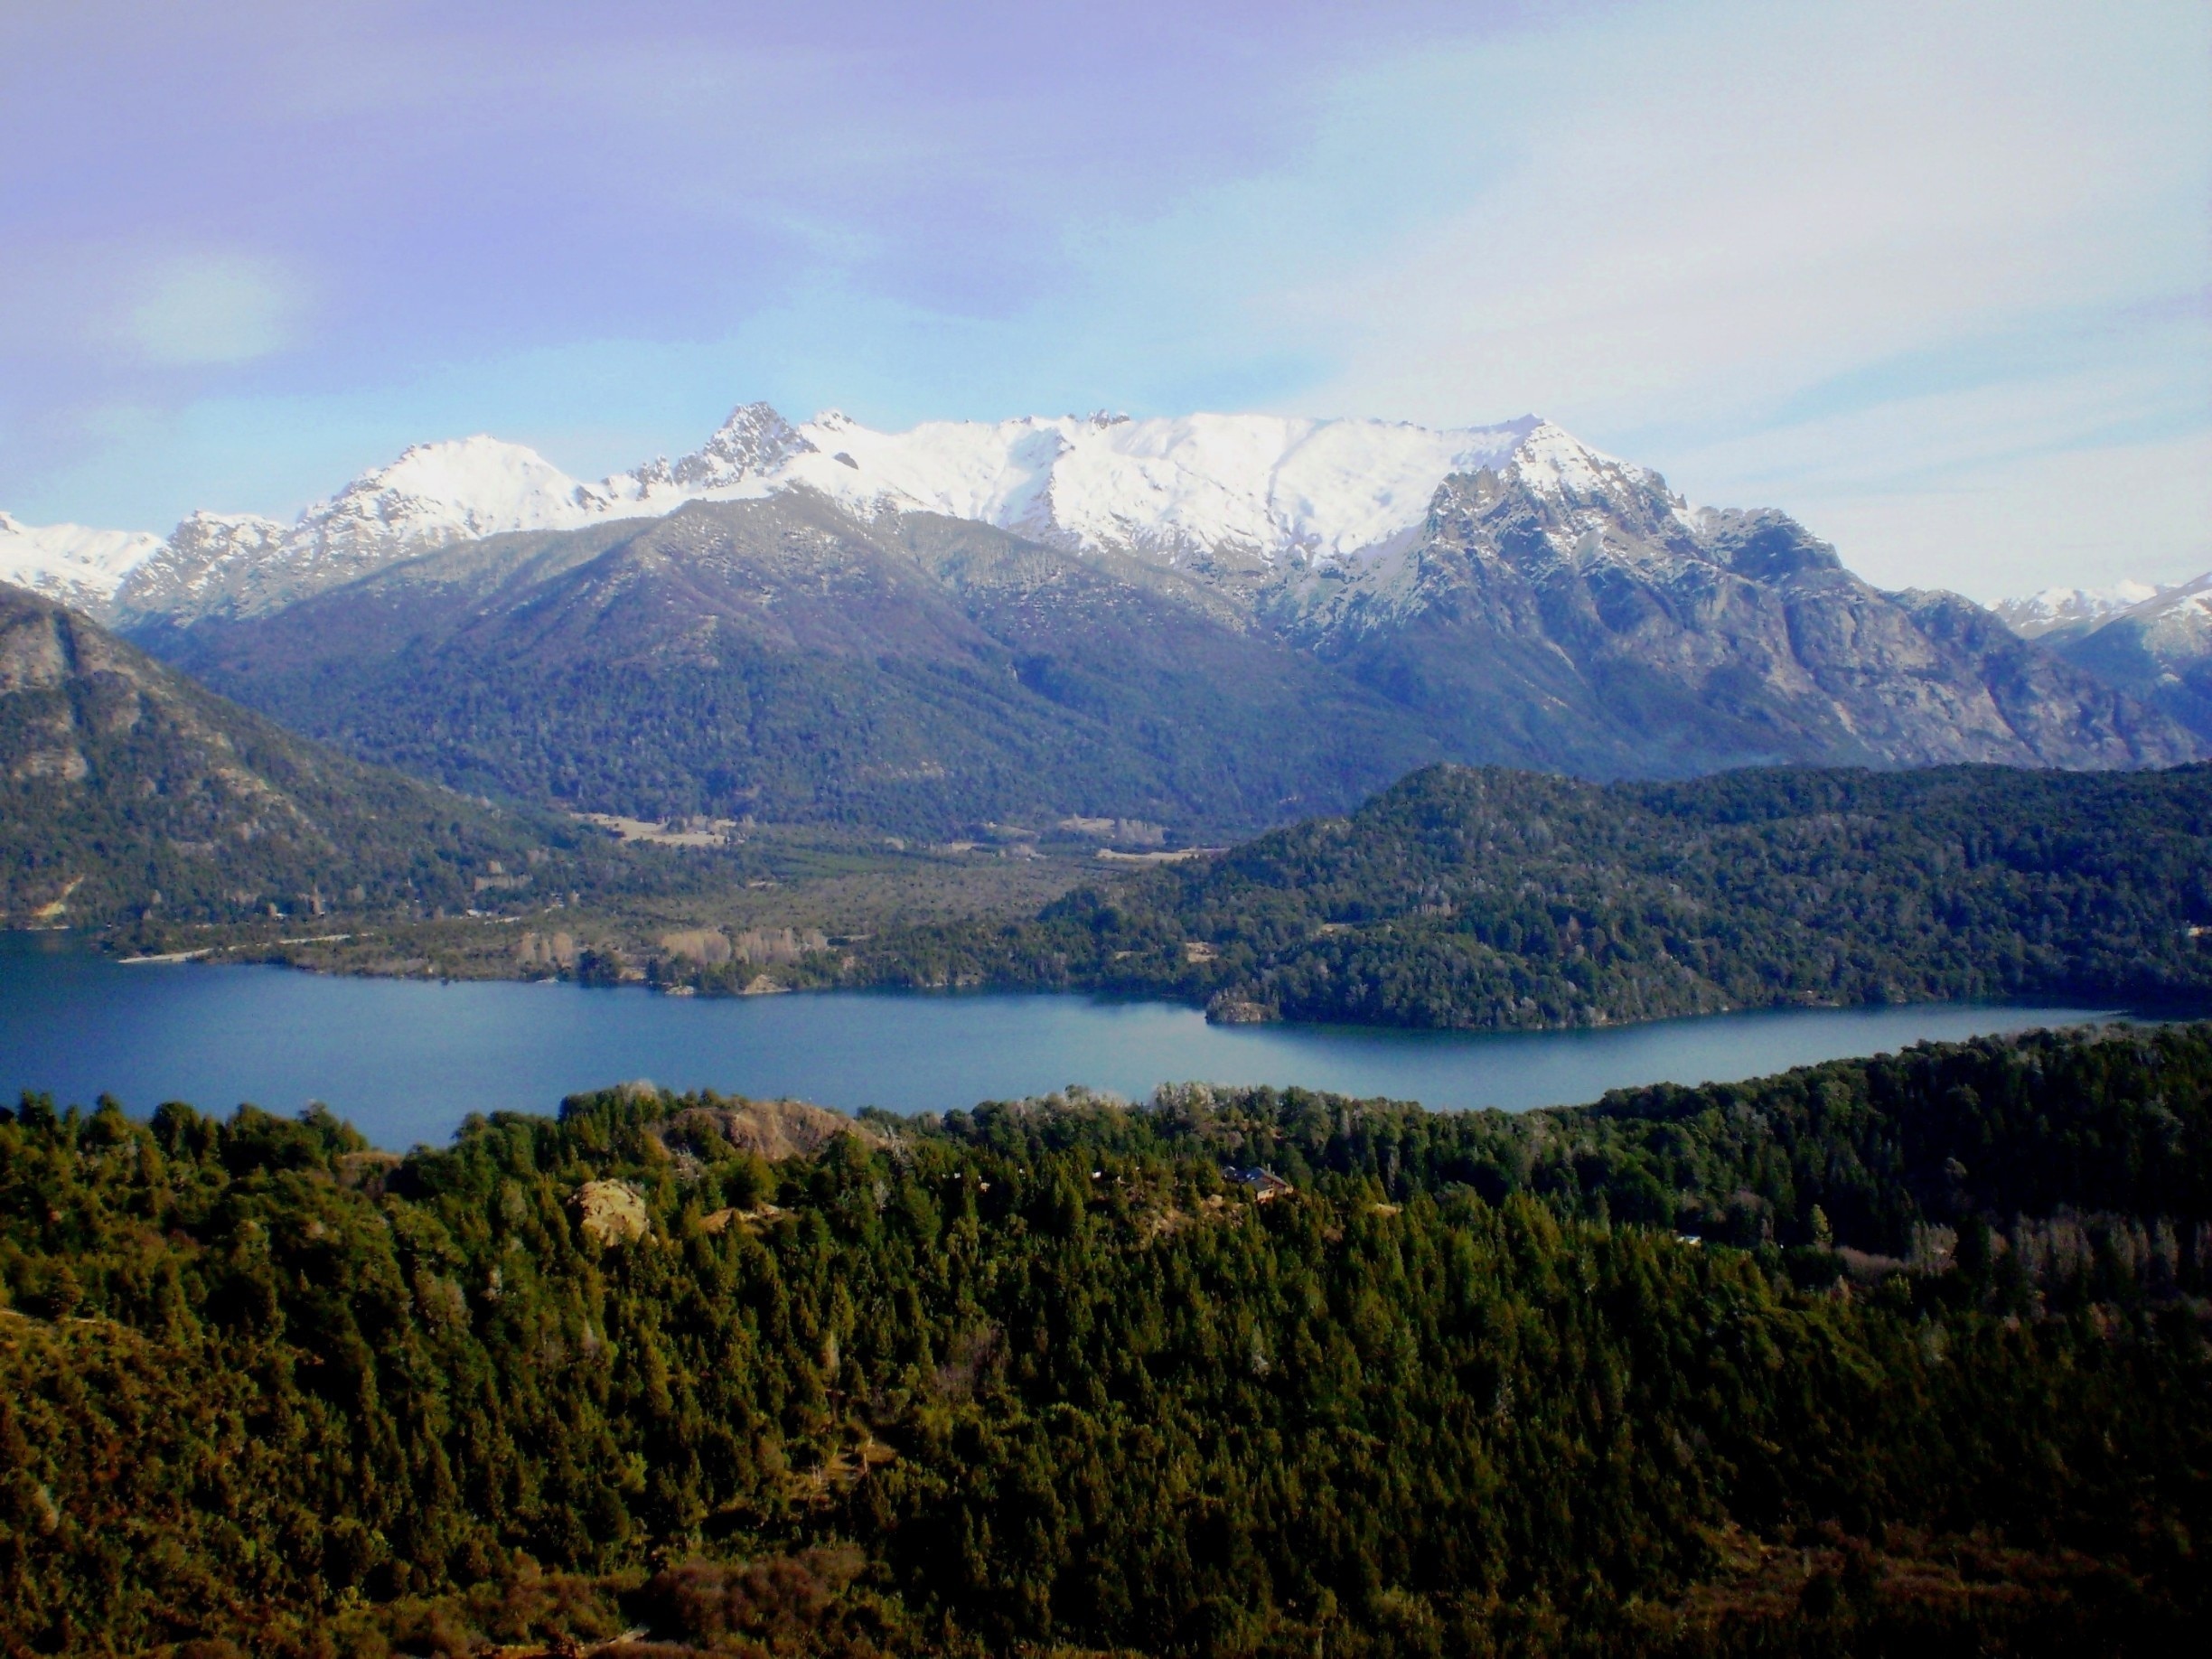 An amazing view of Bariloche, from Cerro Campanario.